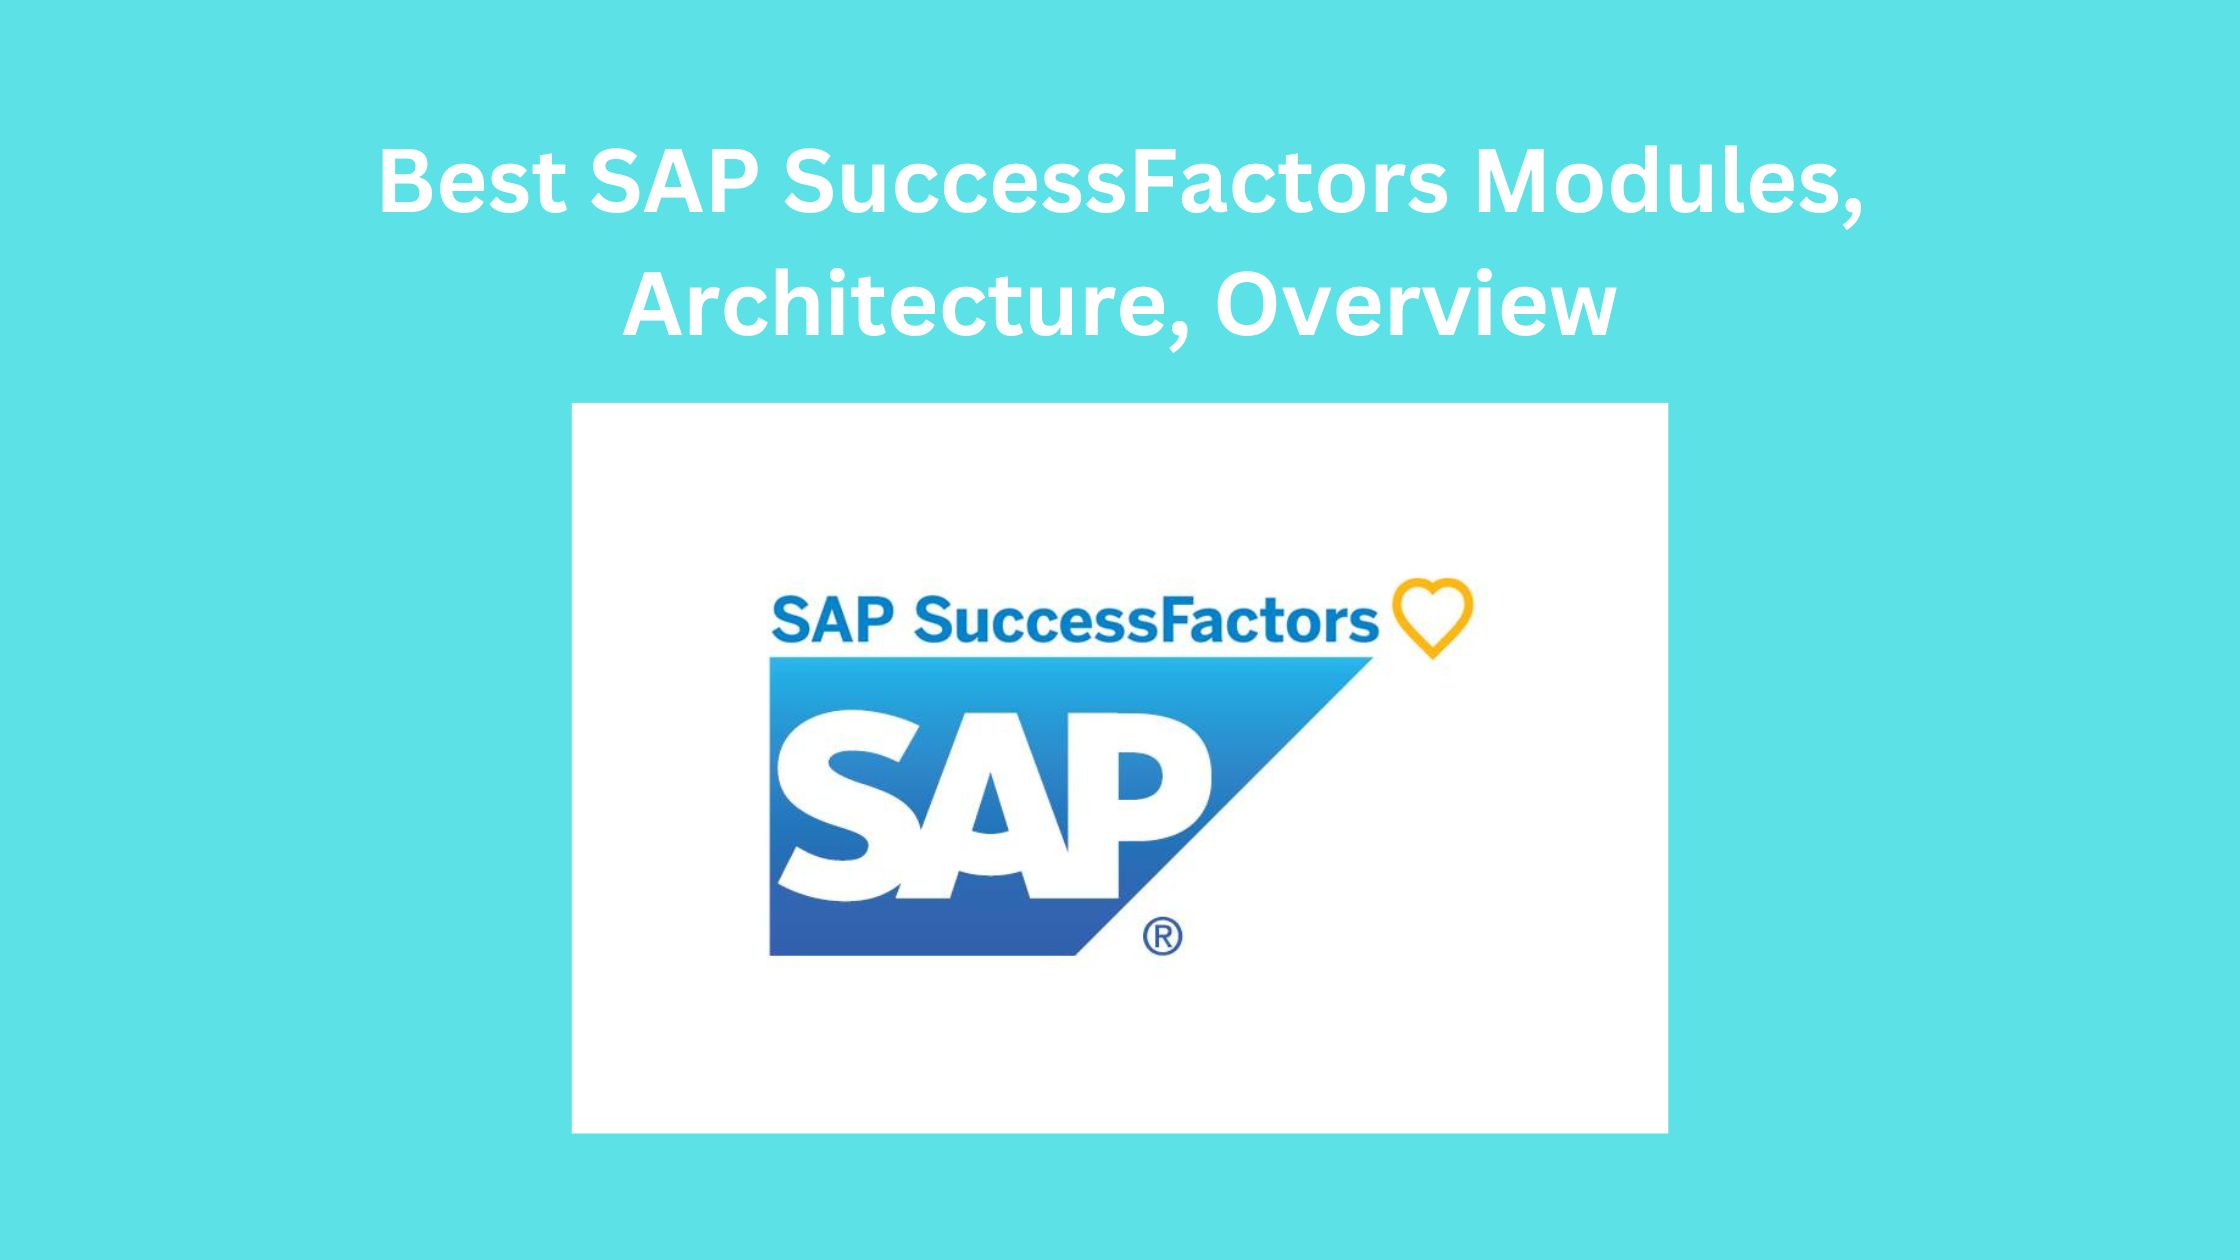 Best SAP SuccessFactors Modules, Architecture, Overview